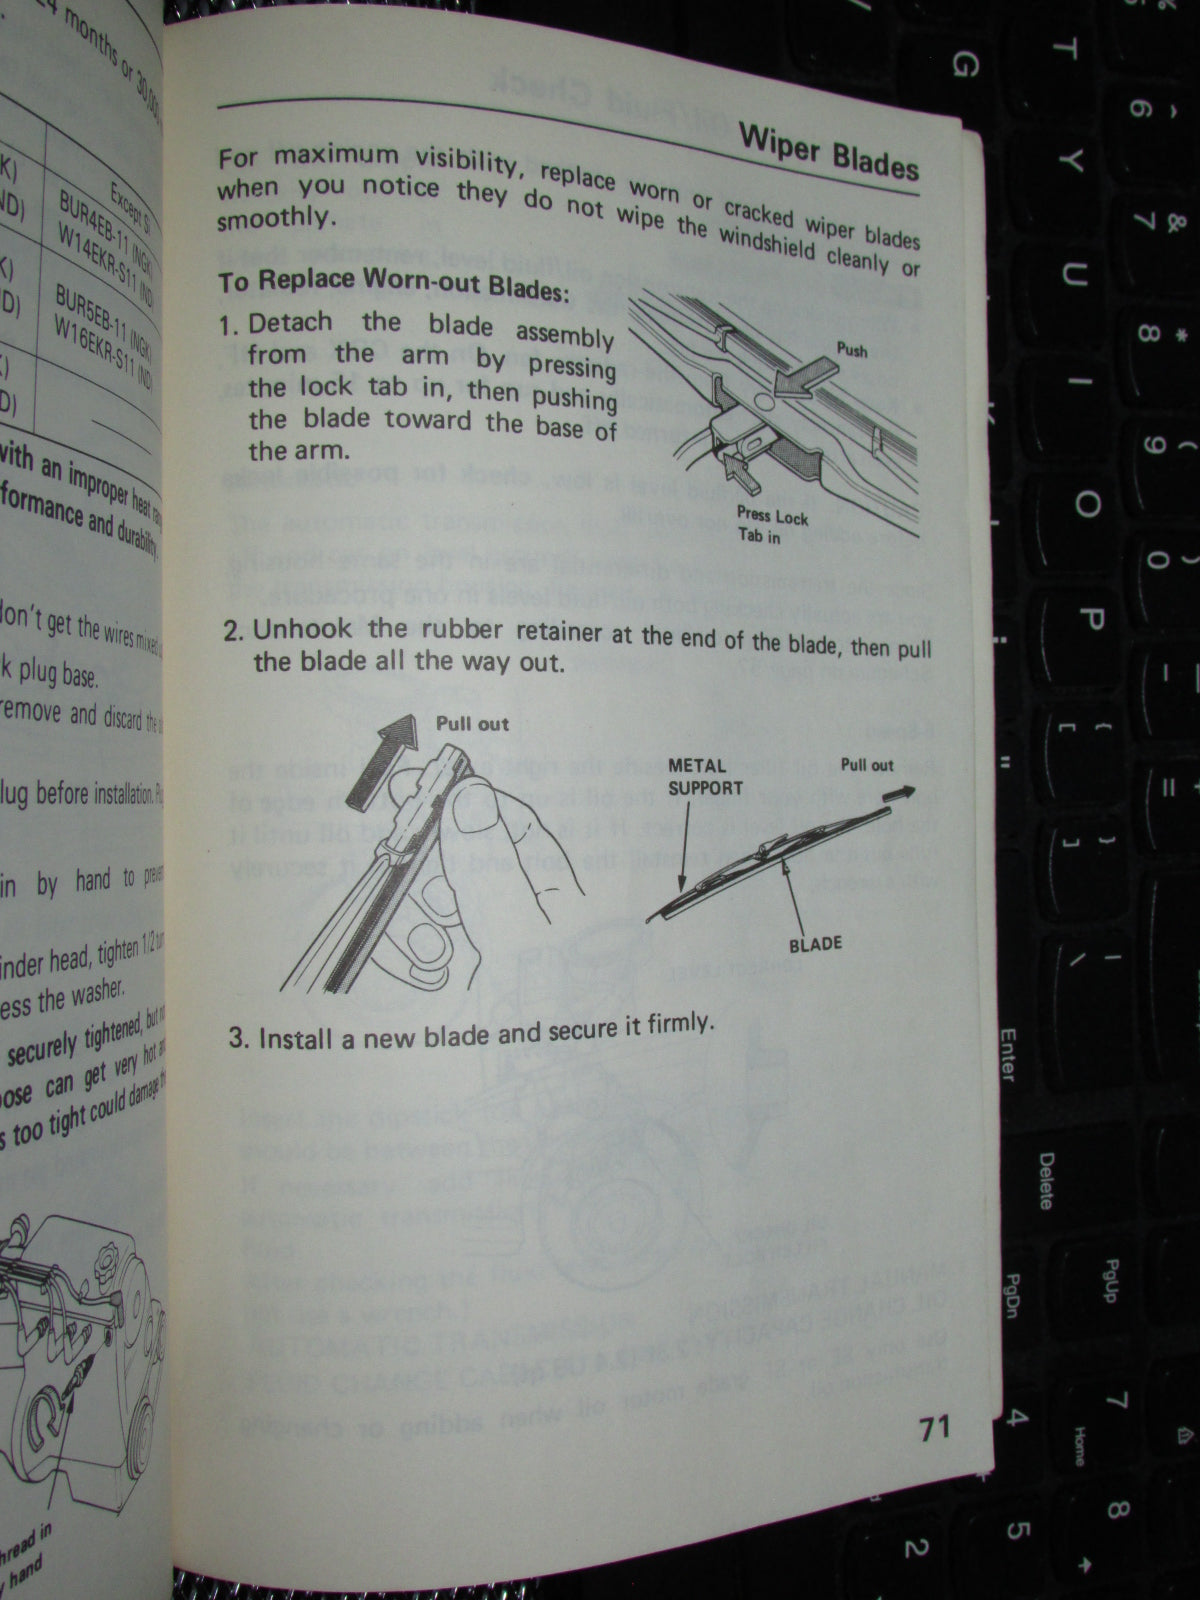 Honda Civic (1986) Owners Manual